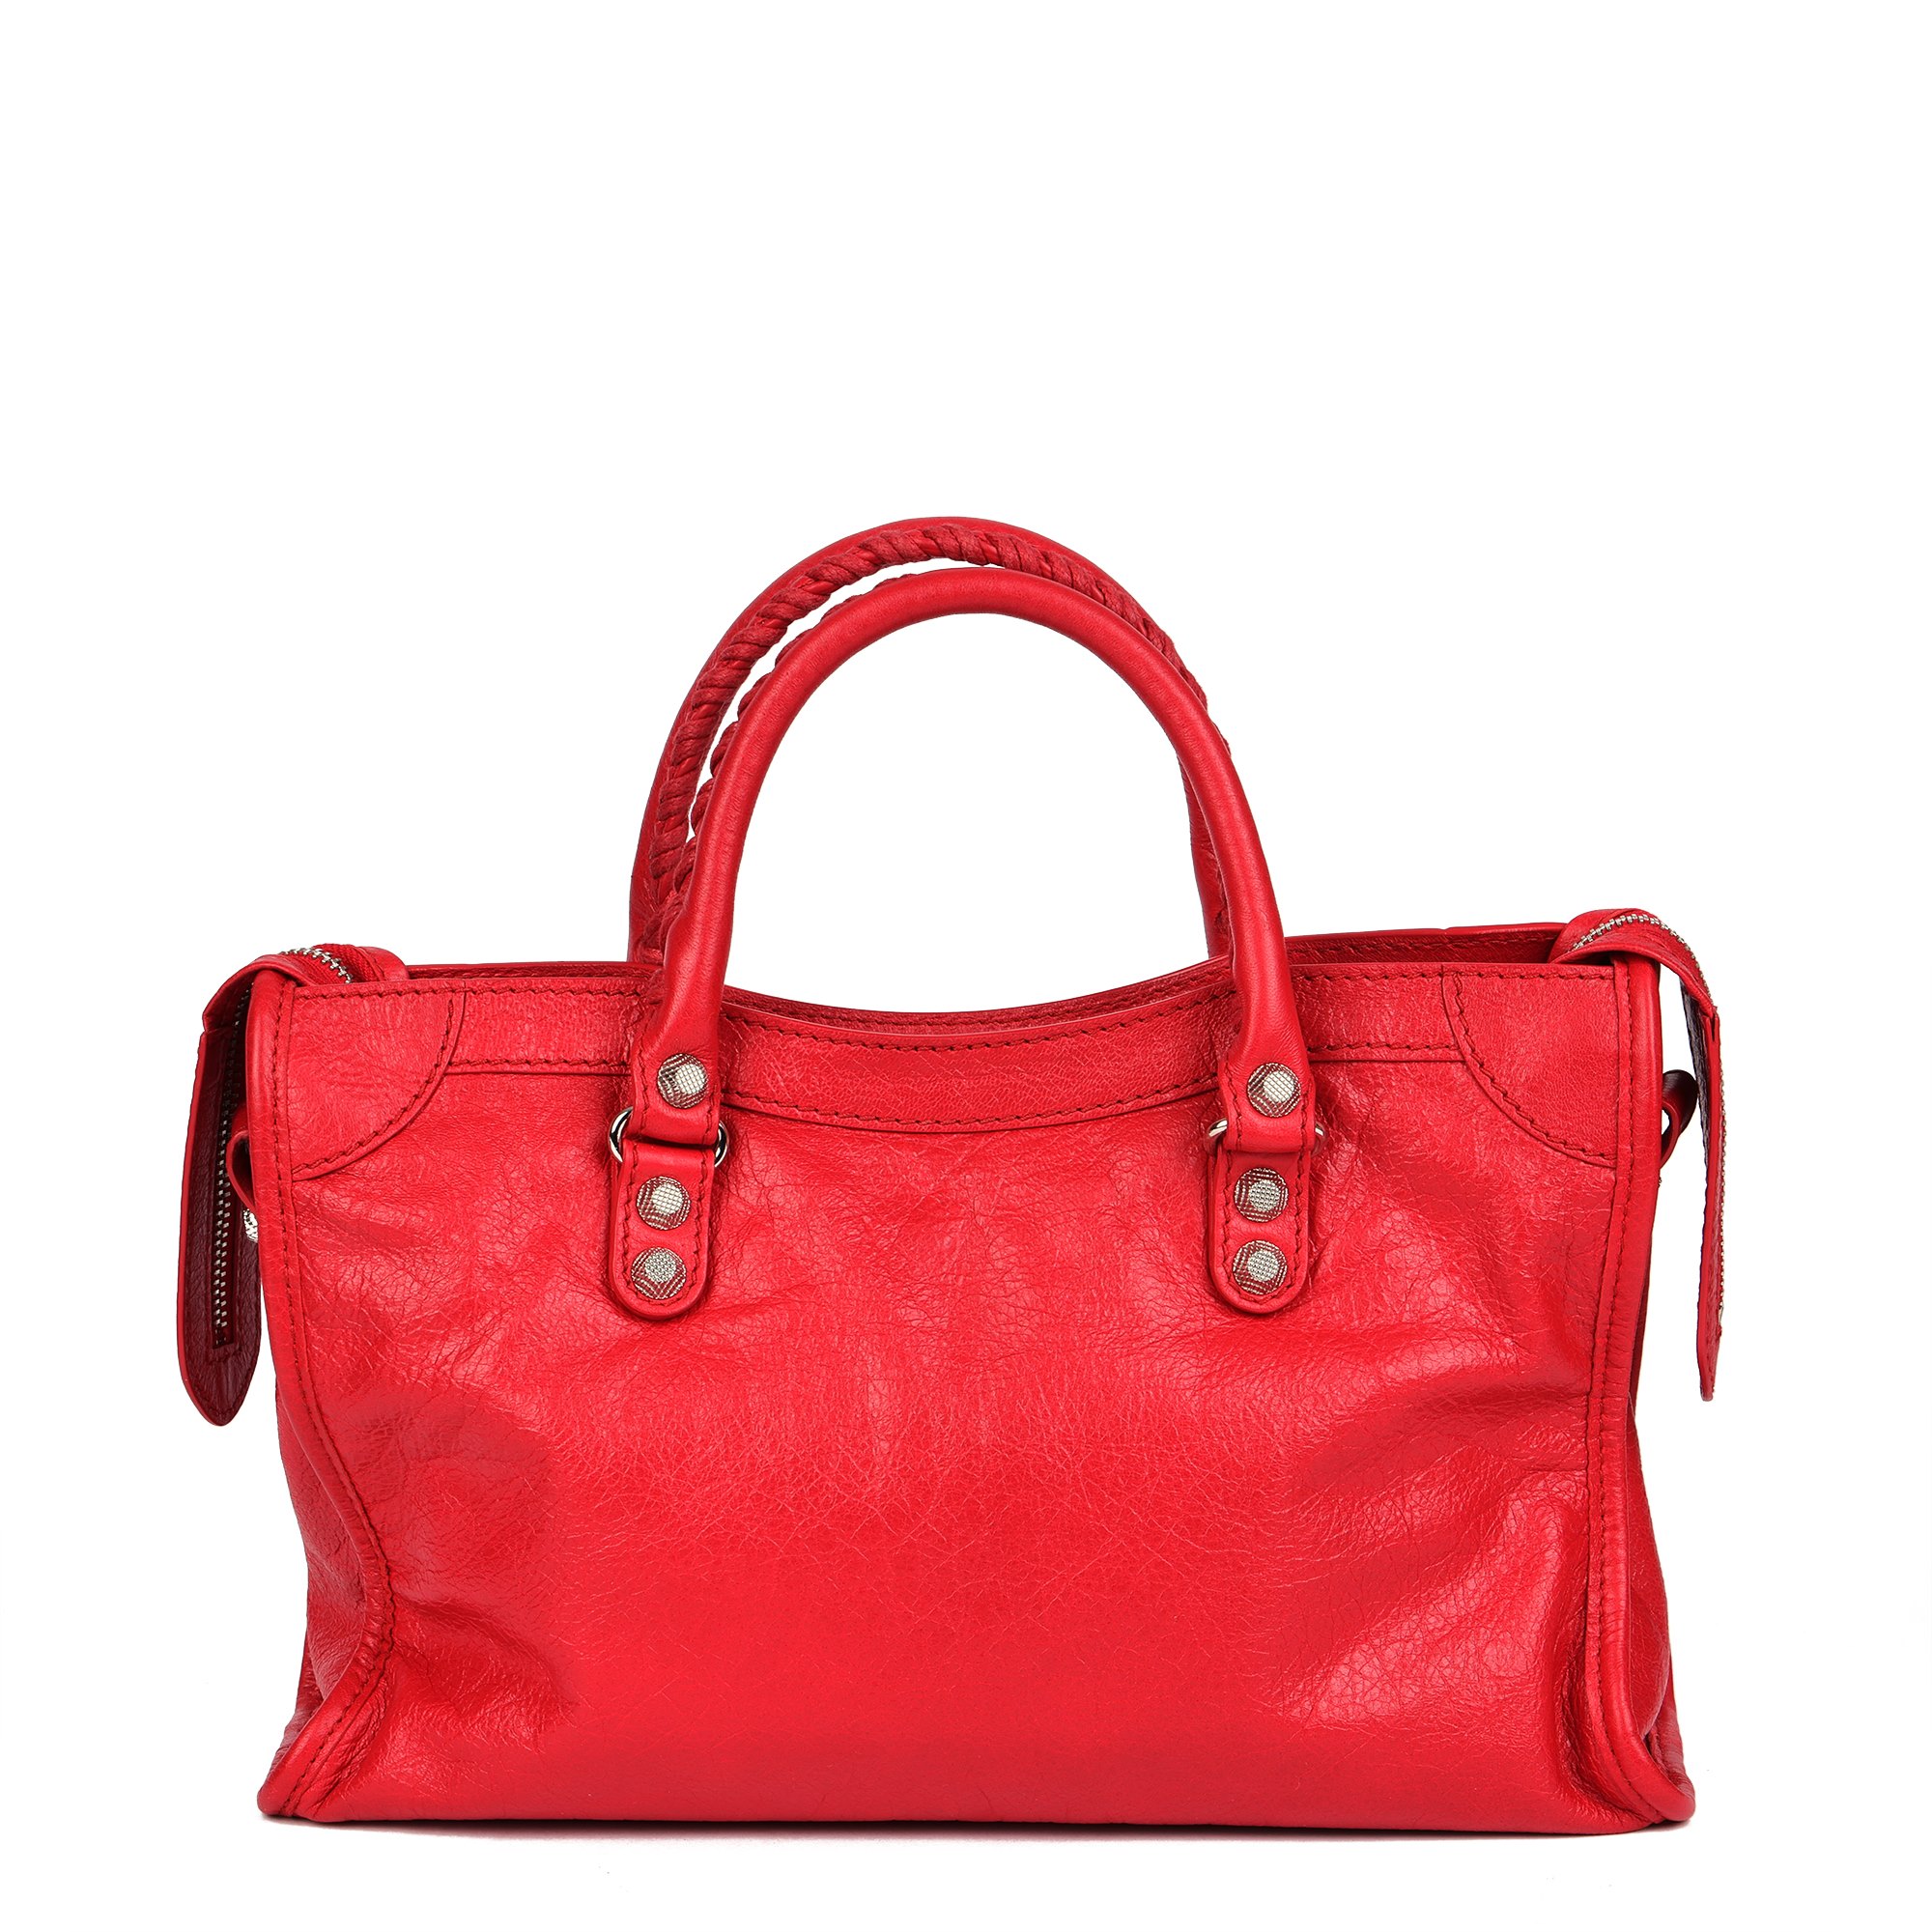 Balenciaga Red Aged Lambskin Small City Bag